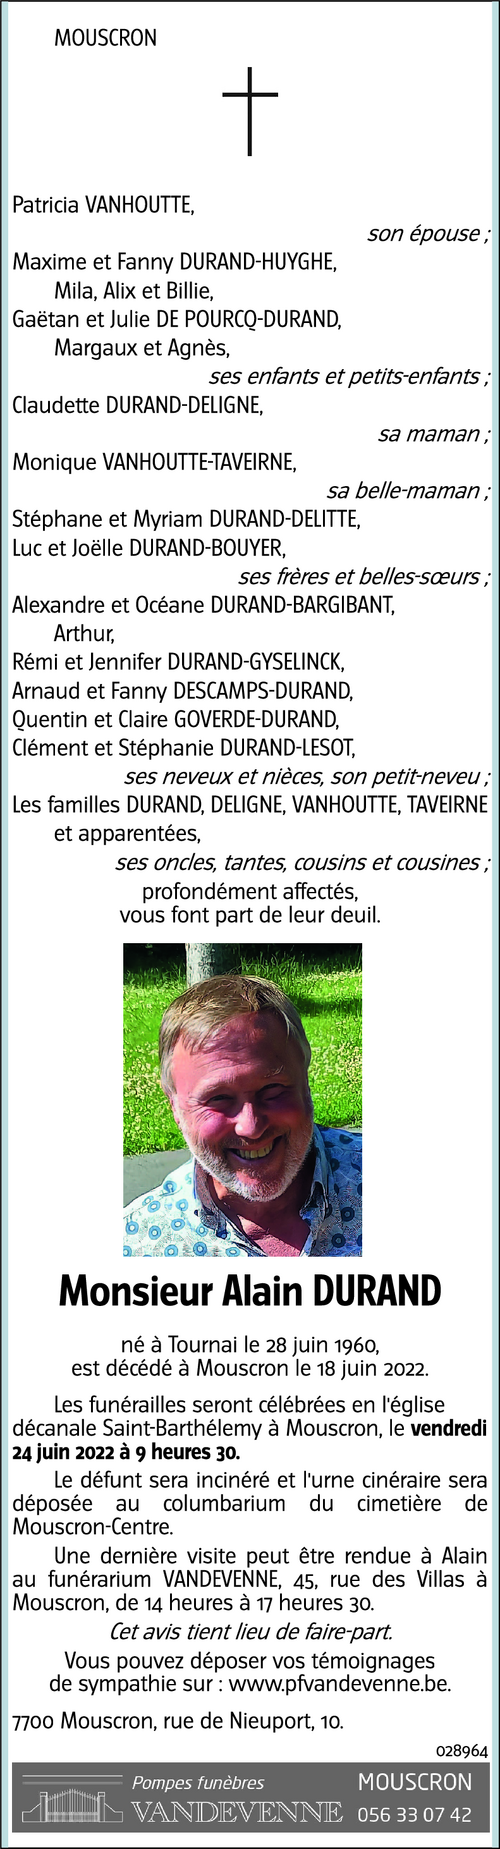 Alain DURAND